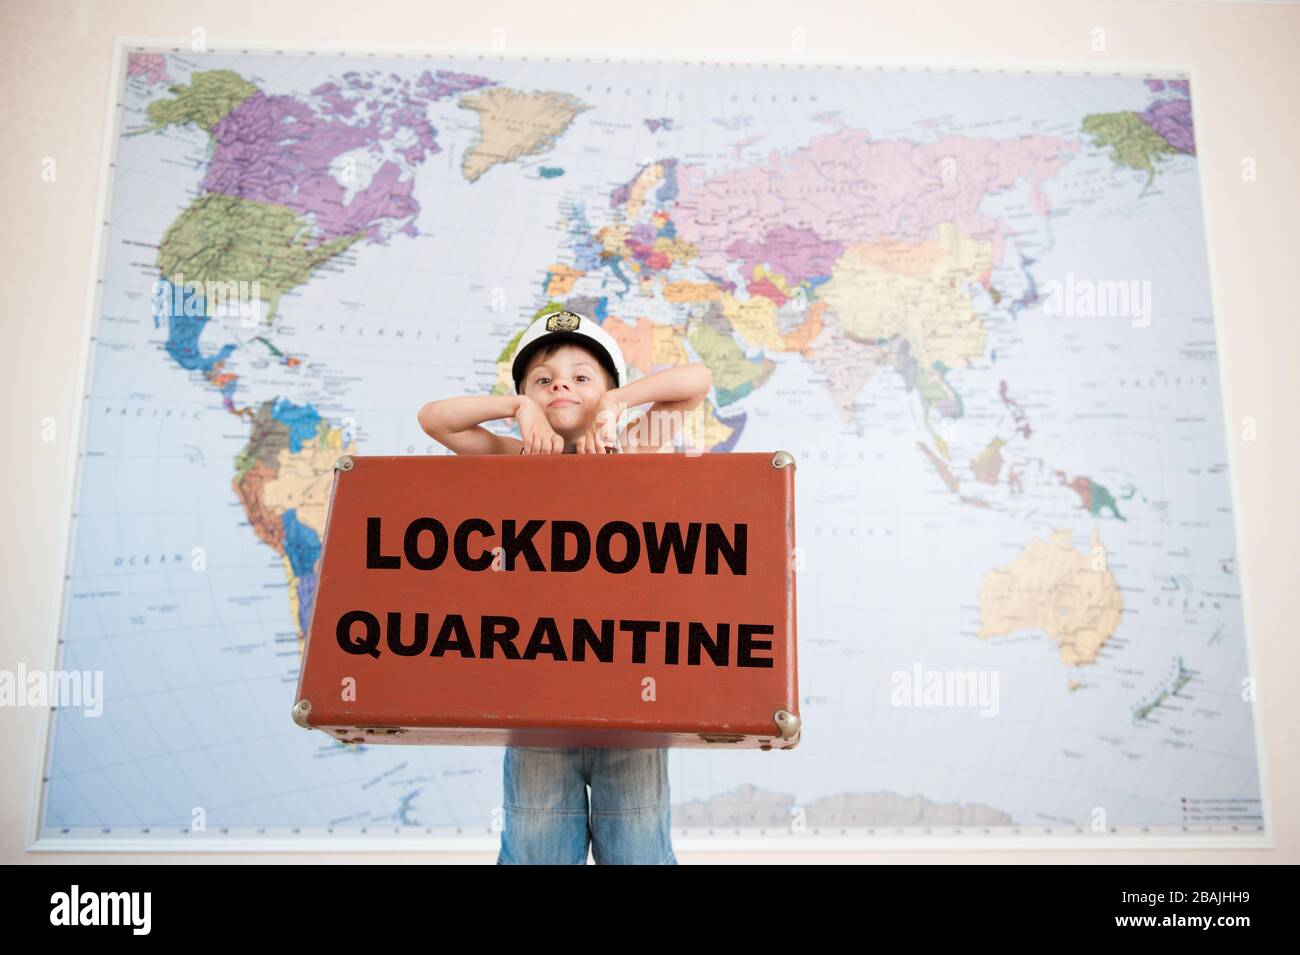 lockdown Quarantäne CANCEL Travel Concept of Little Boy in Kapitän hat Holdingcase mit Slogan auf Weltkarte Hintergrund Stockfoto